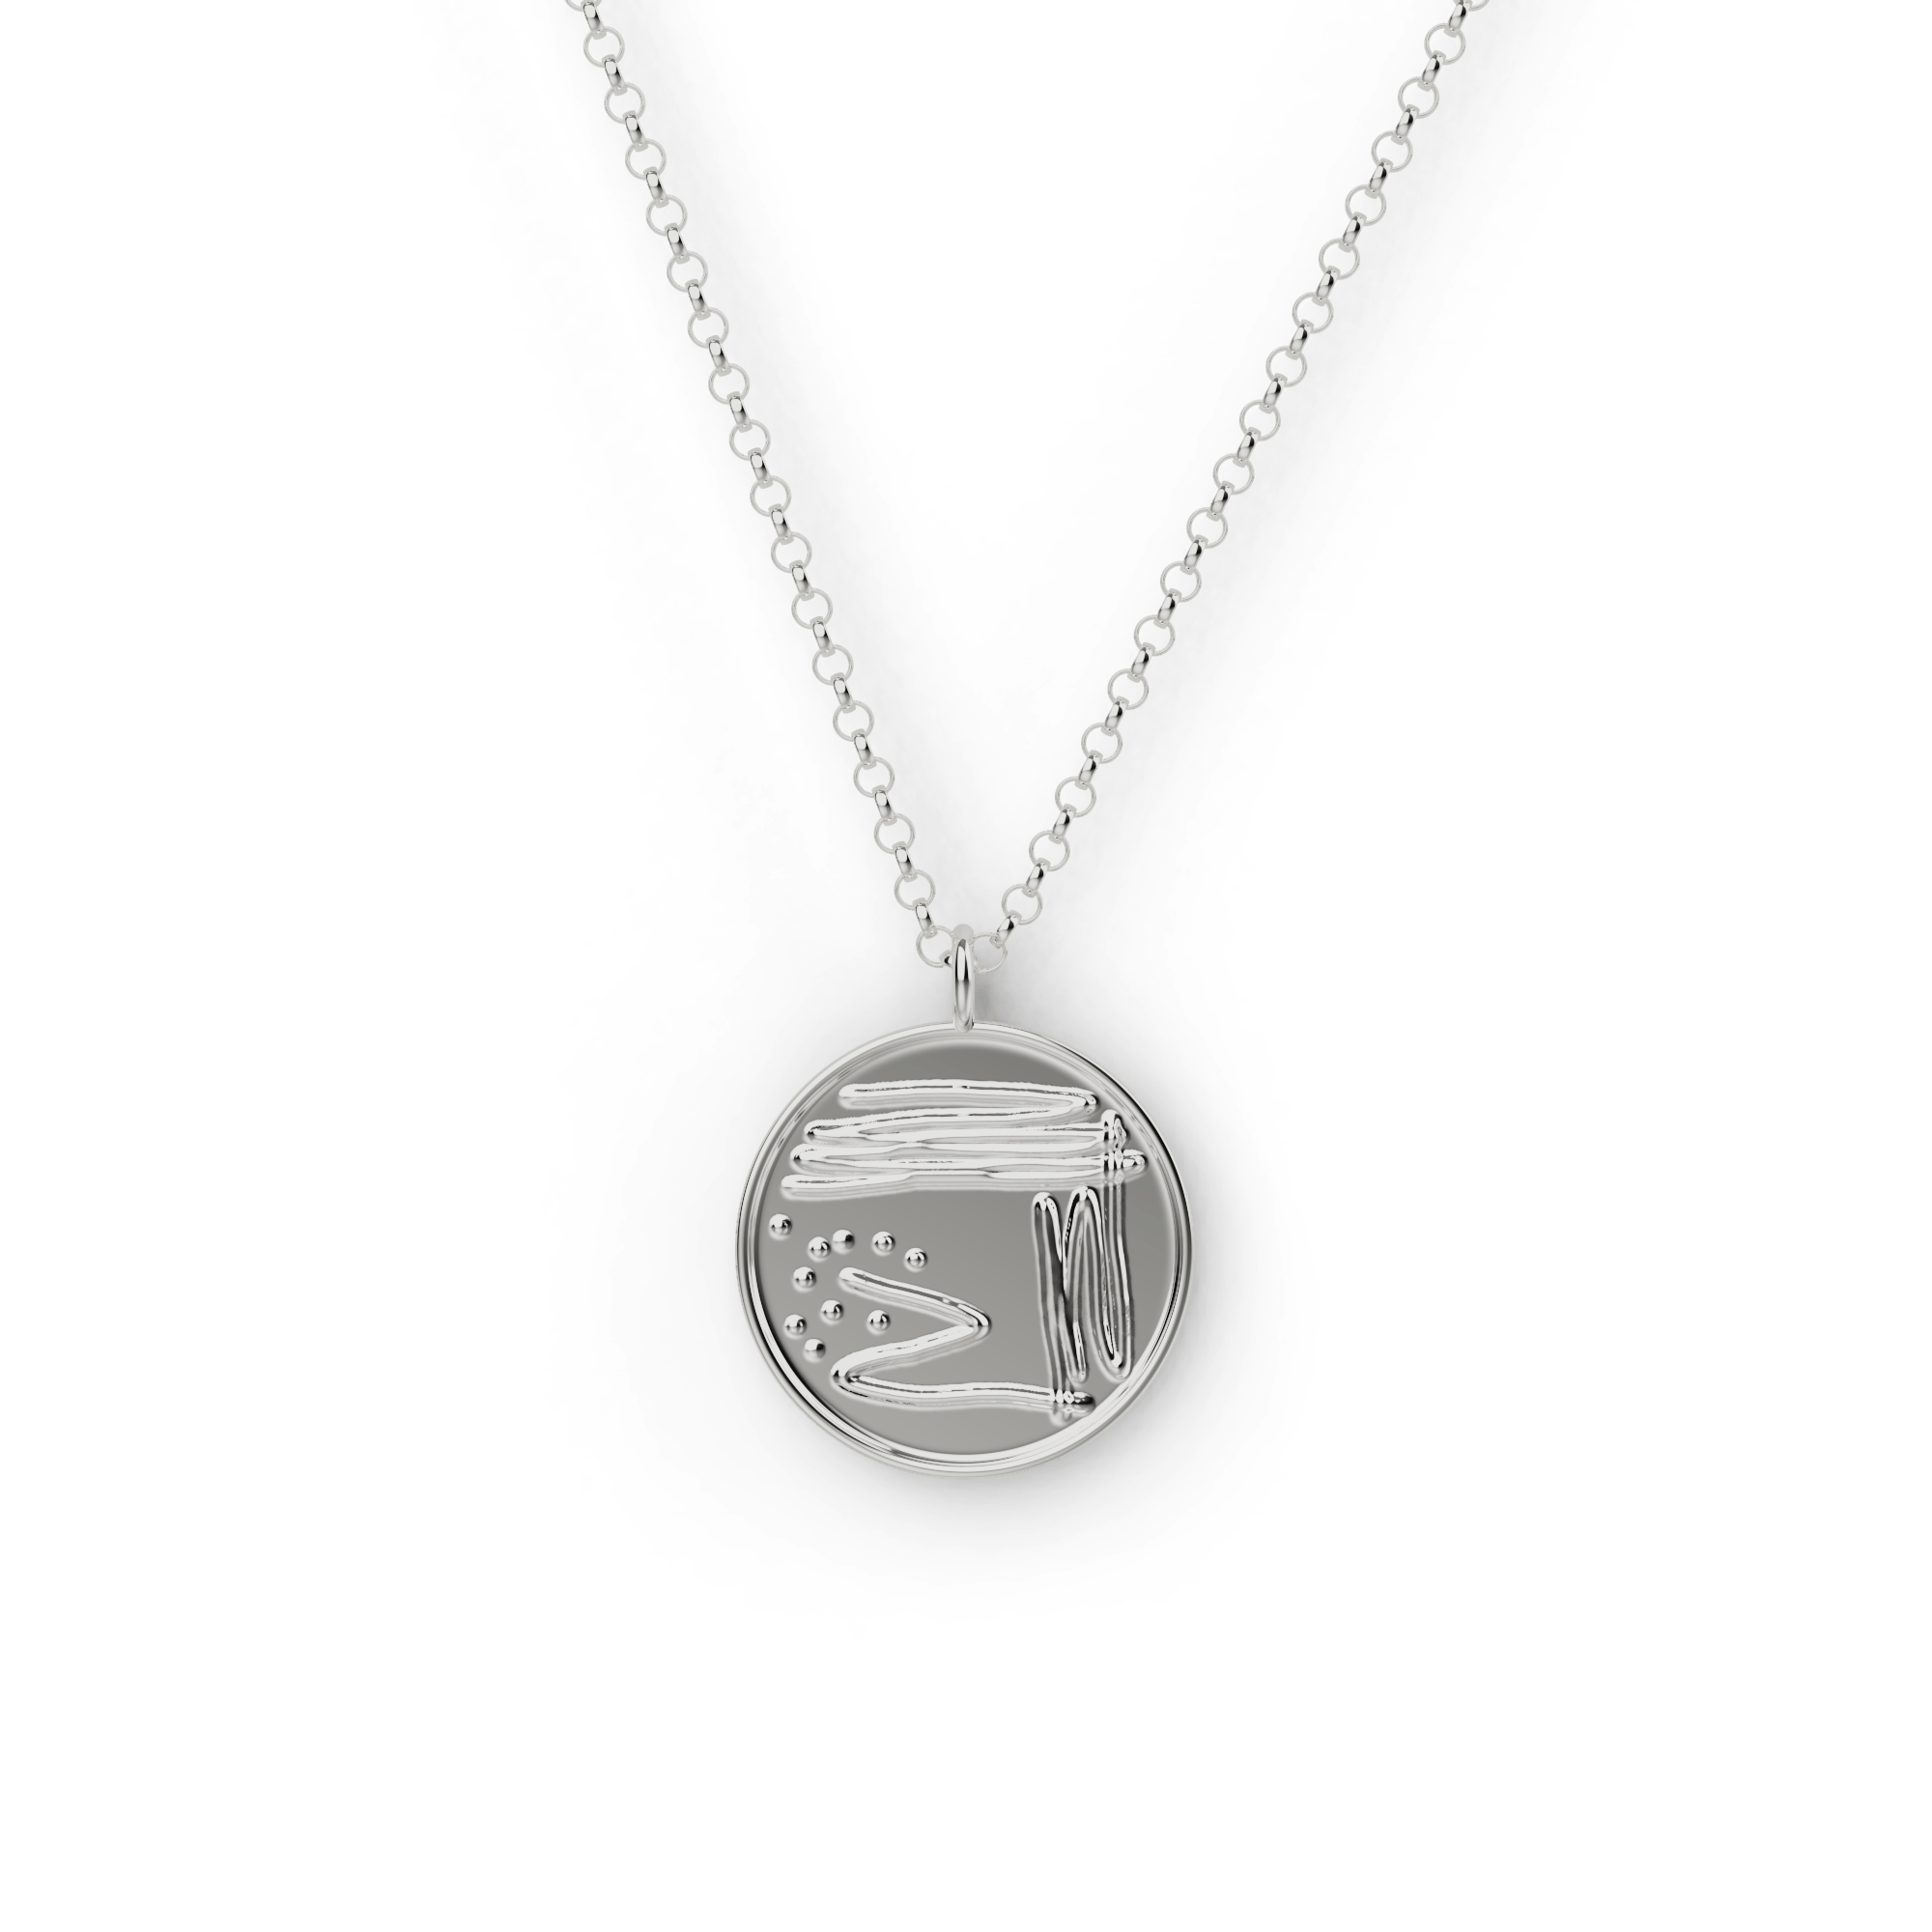 petri dish necklace | silver